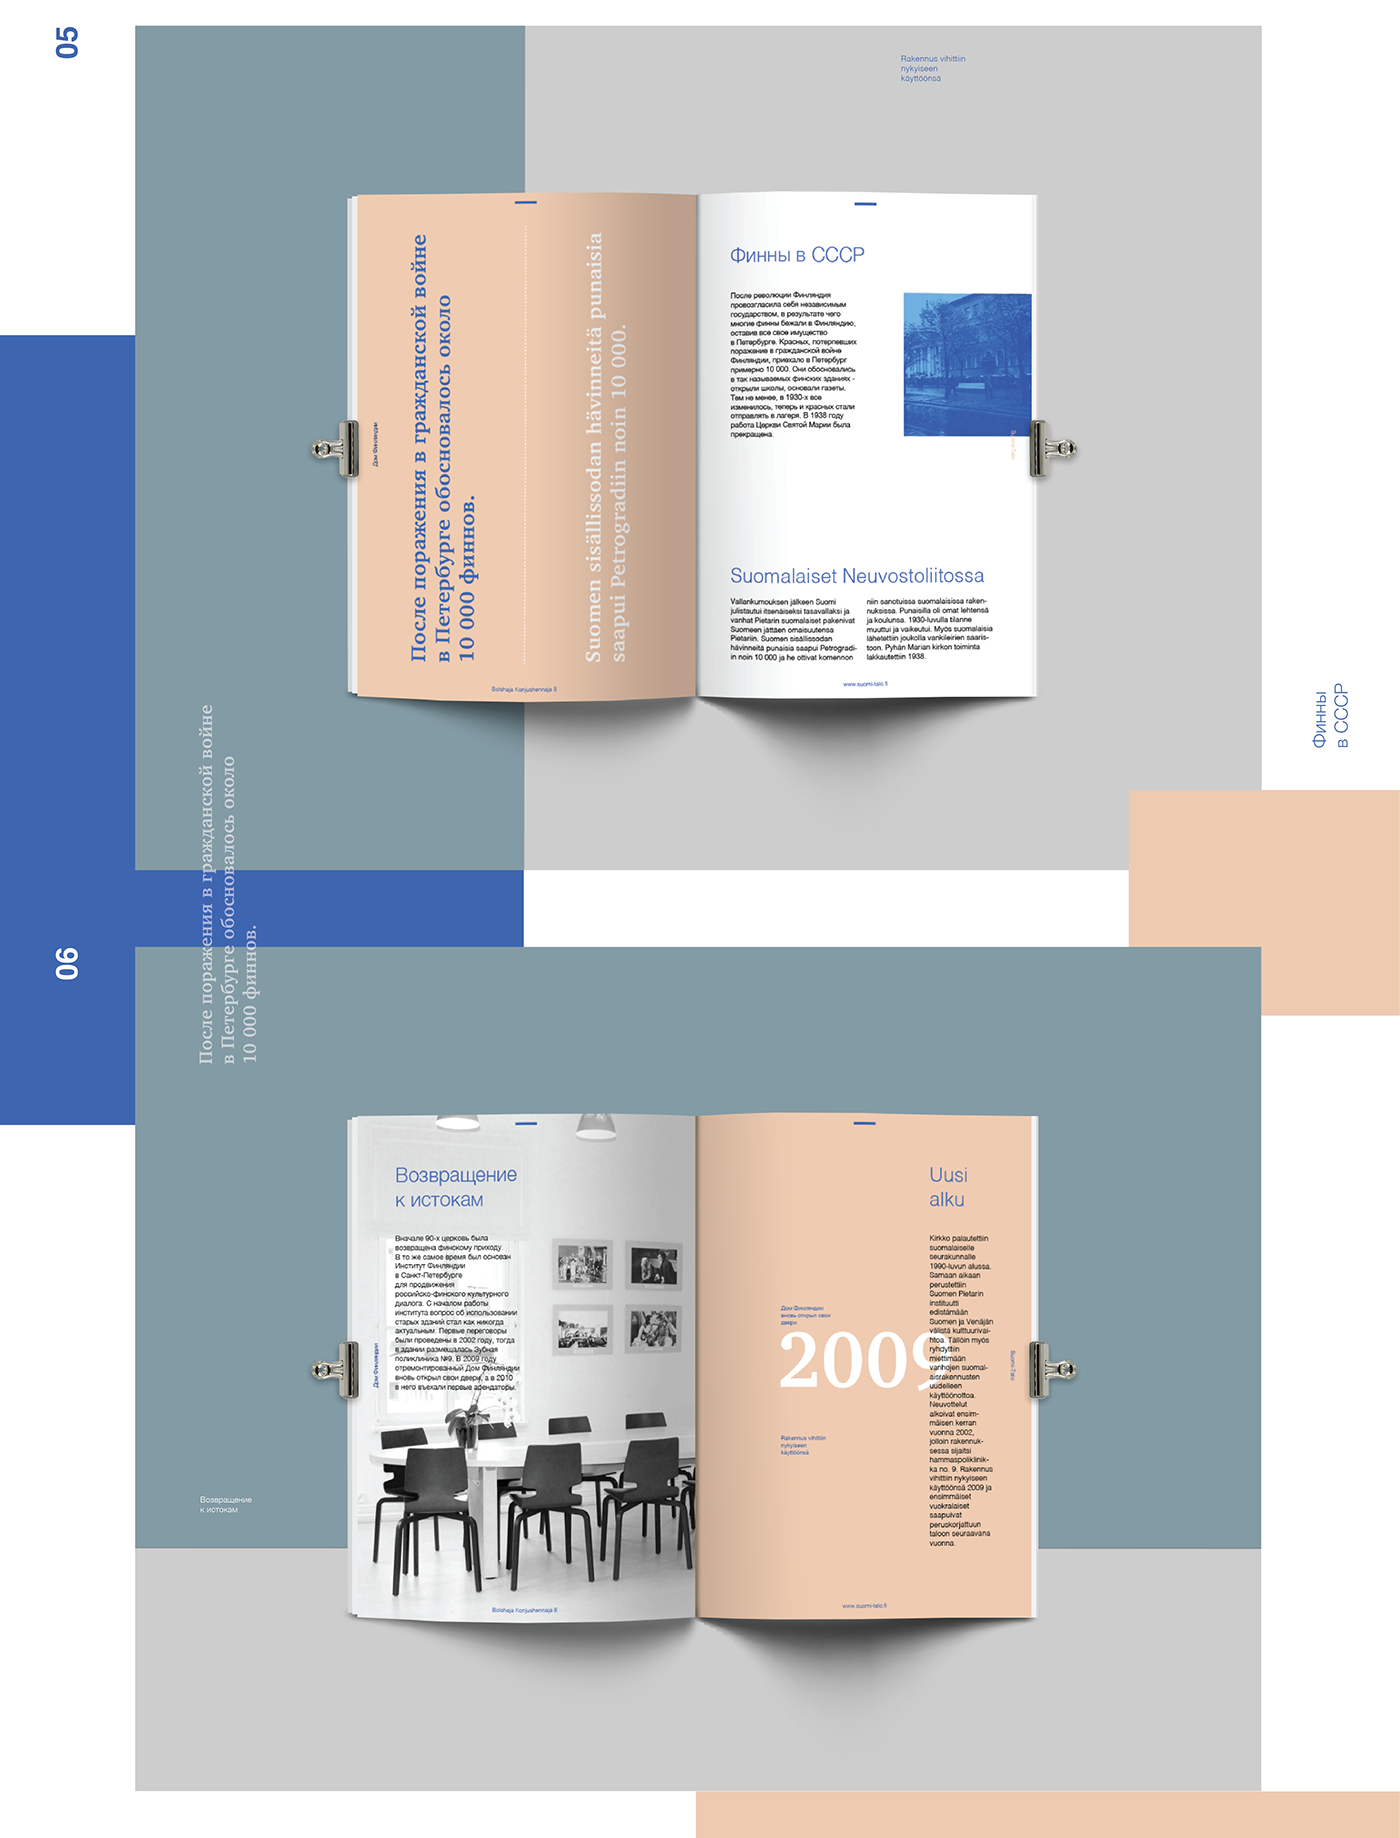 Booklet editorial finland brochure monochrome history Russia Duotone institute